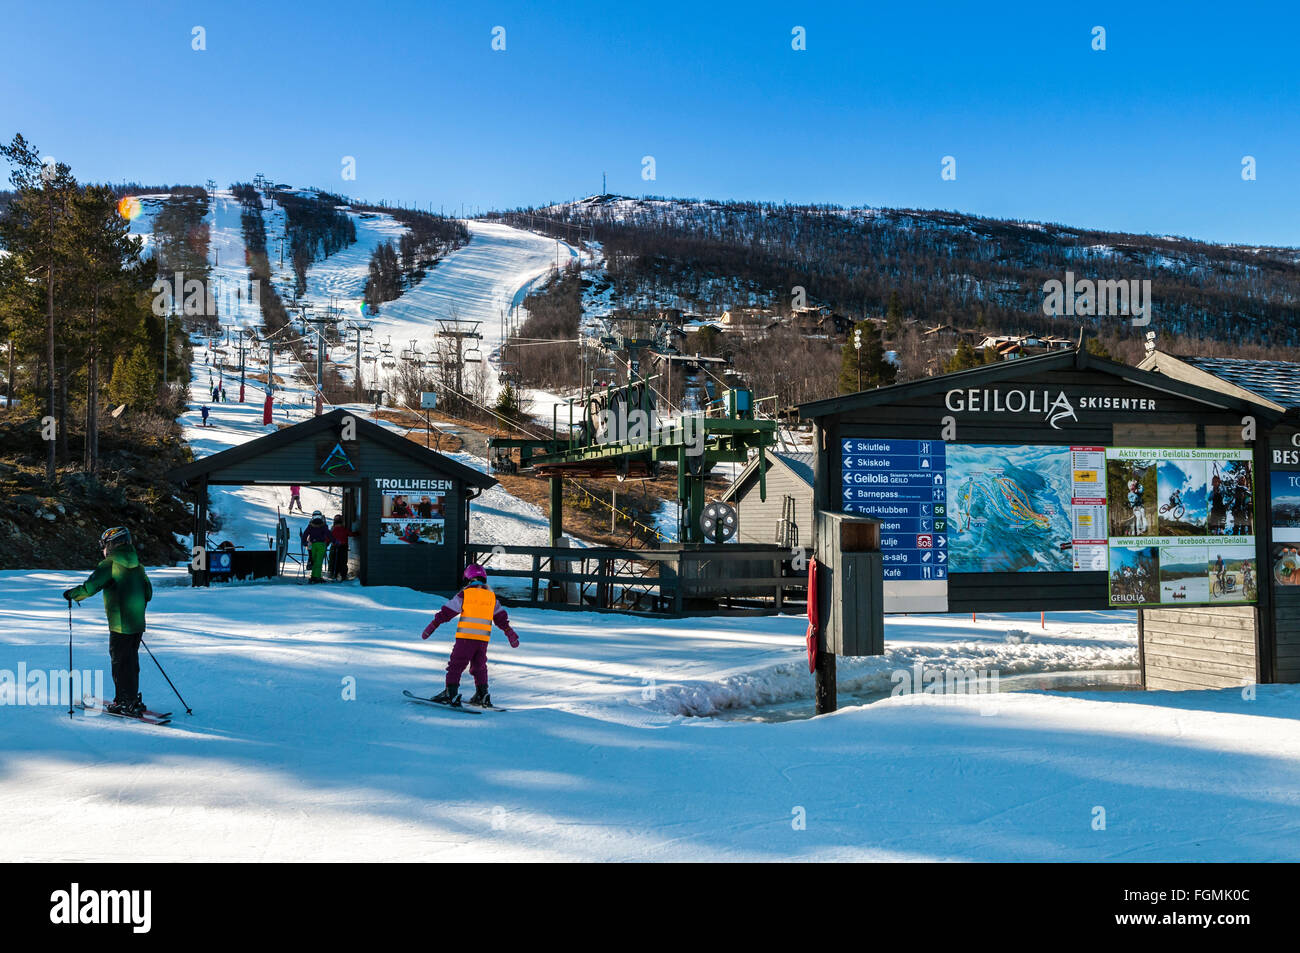 Pistas de esquí, esquiador, skicenter Geilolia, Geilo, invierno, Buskerud, Noruega Foto de stock